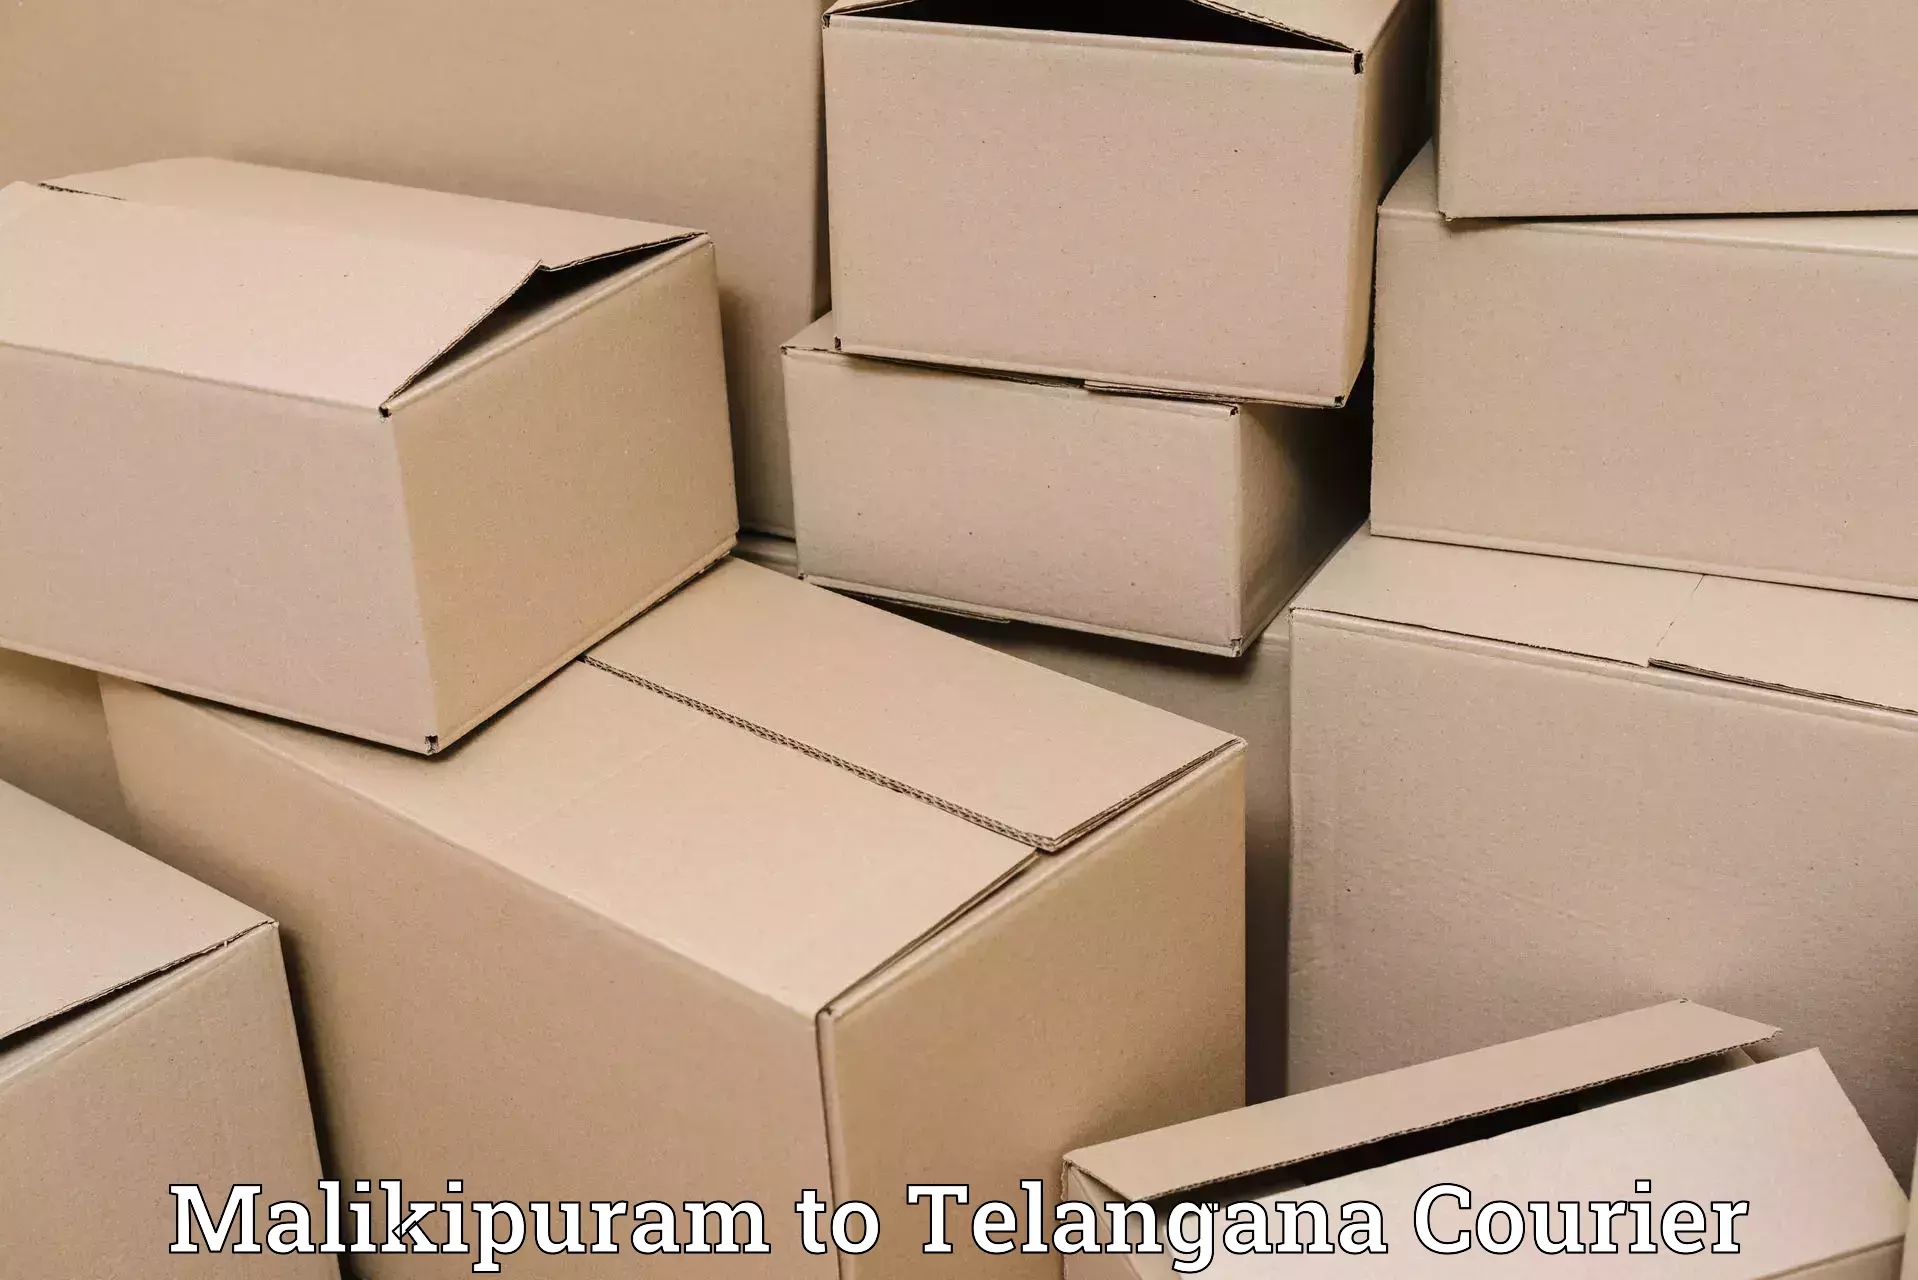 Reliable logistics providers Malikipuram to Koratla